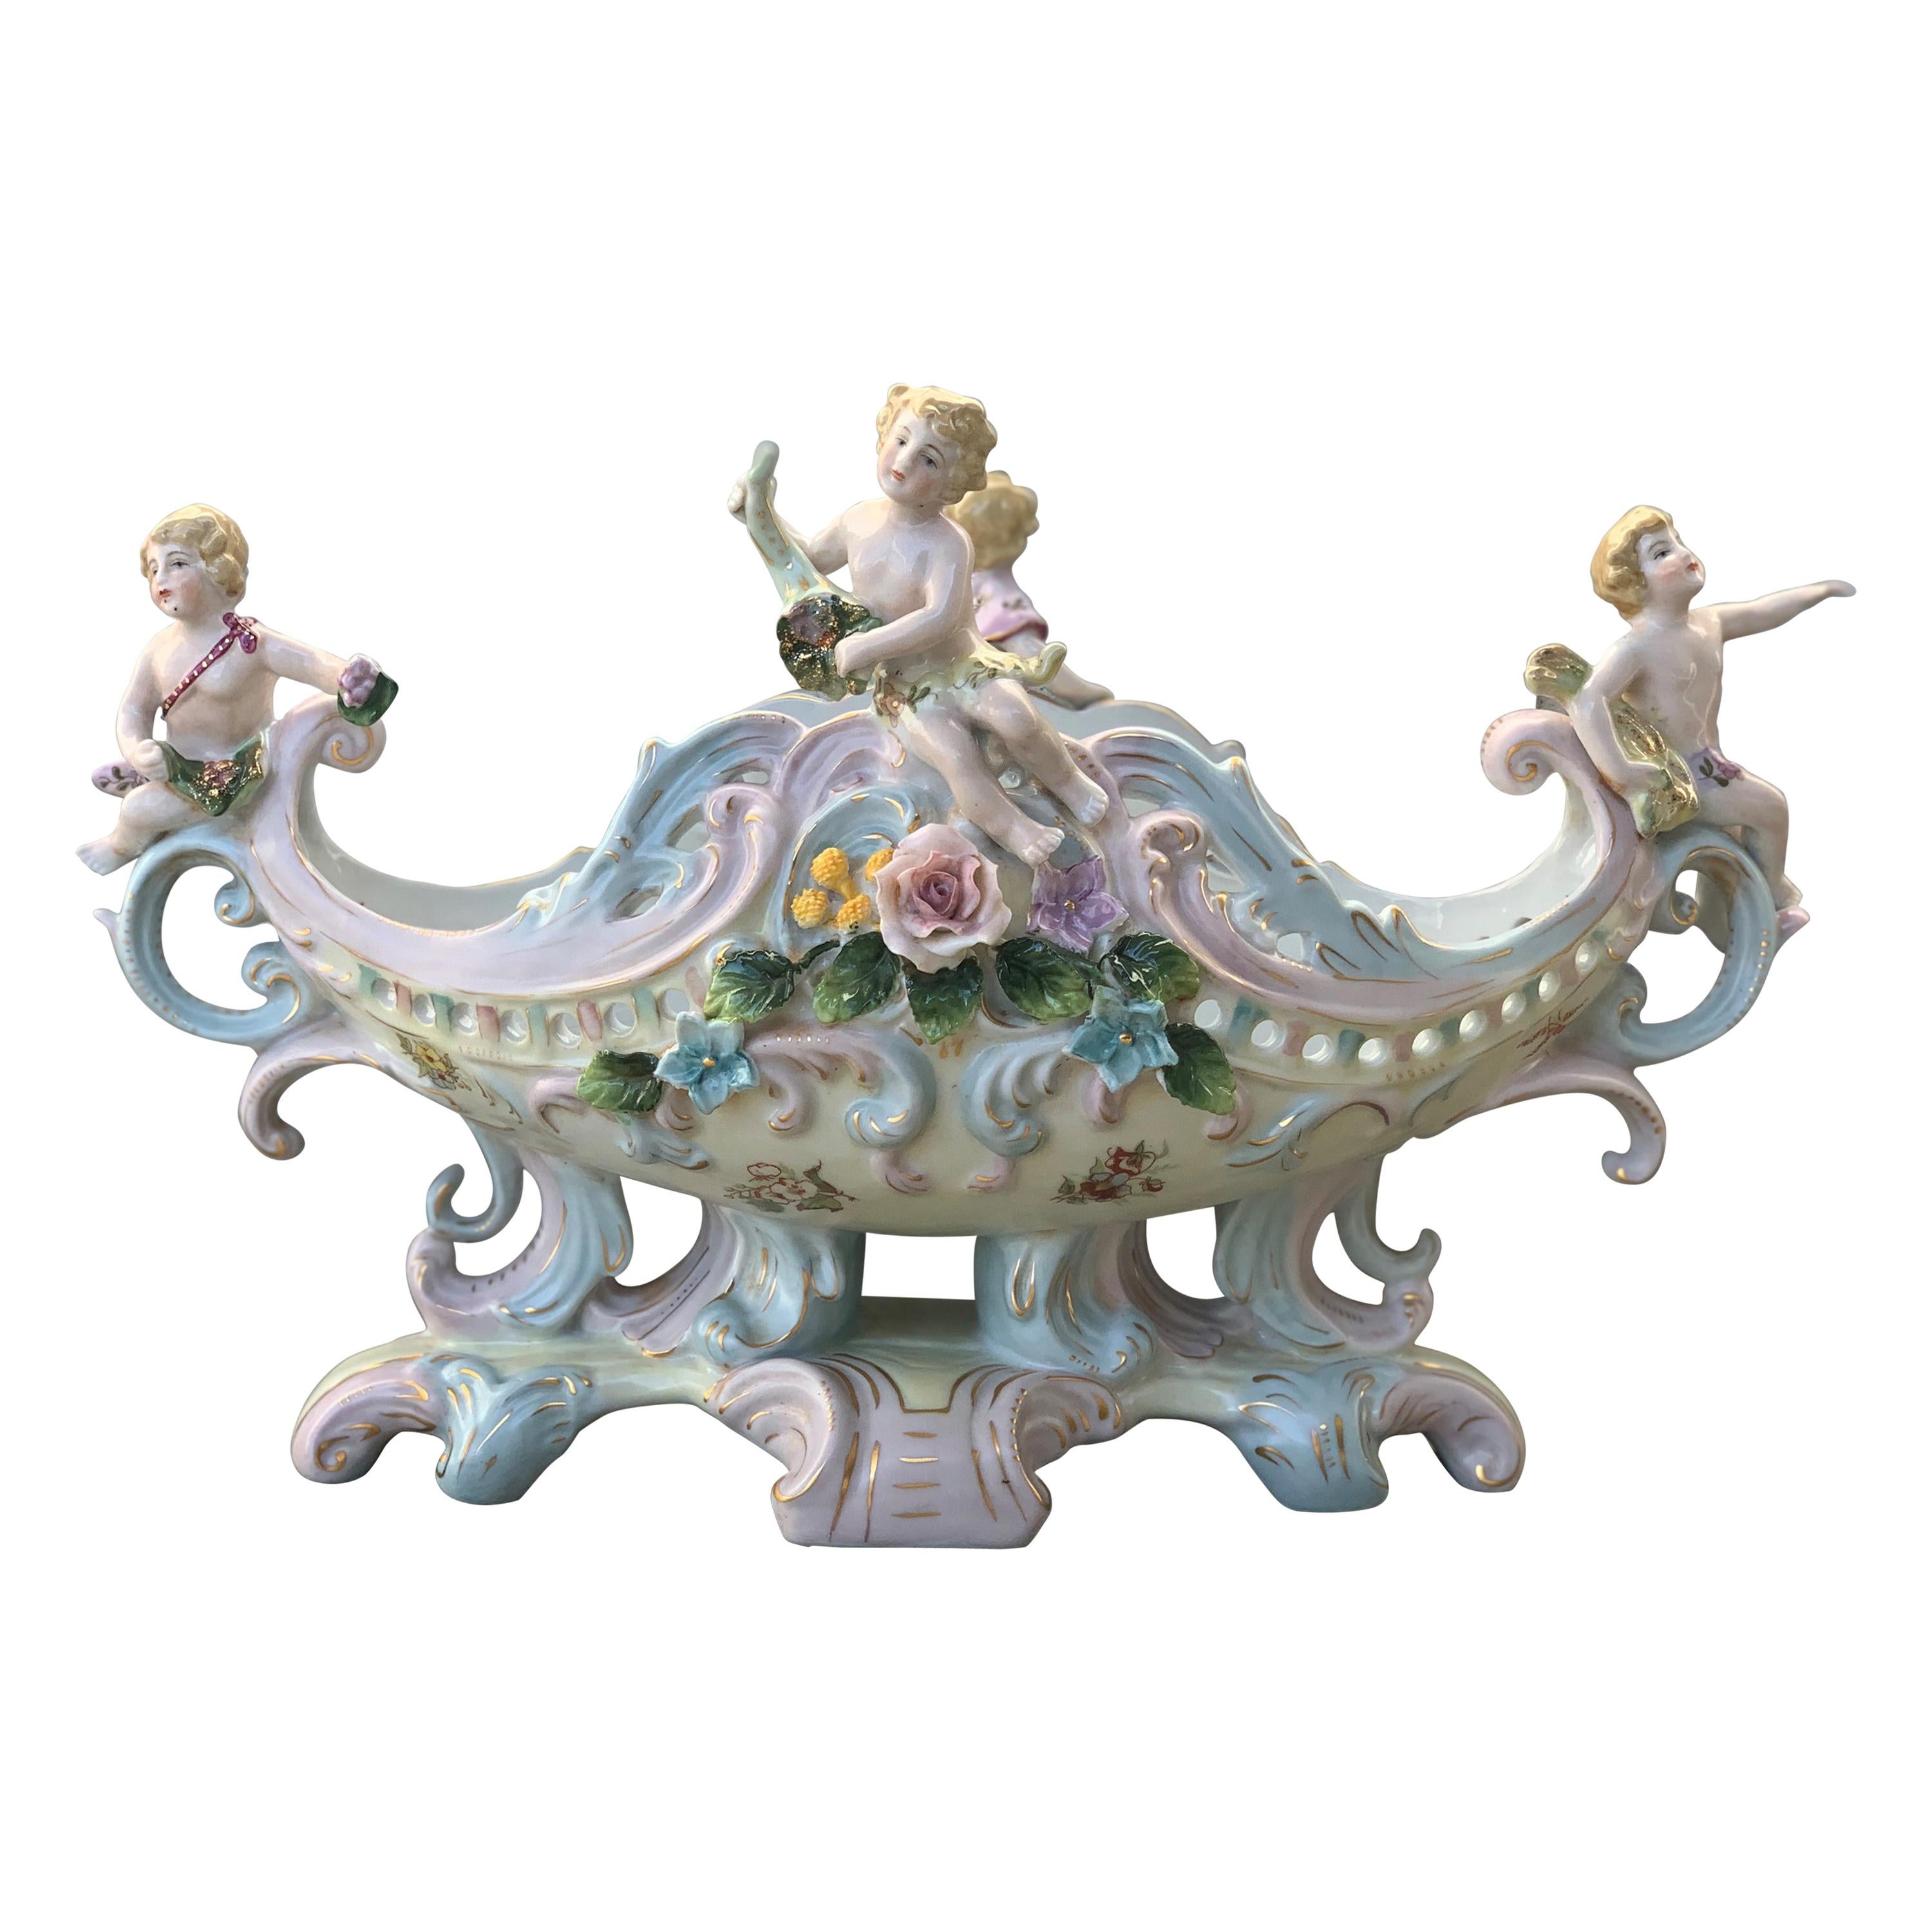 Rococó Porcelain Figural Cherub Jardinière or Centerpiece Bowl by Meissen For Sale